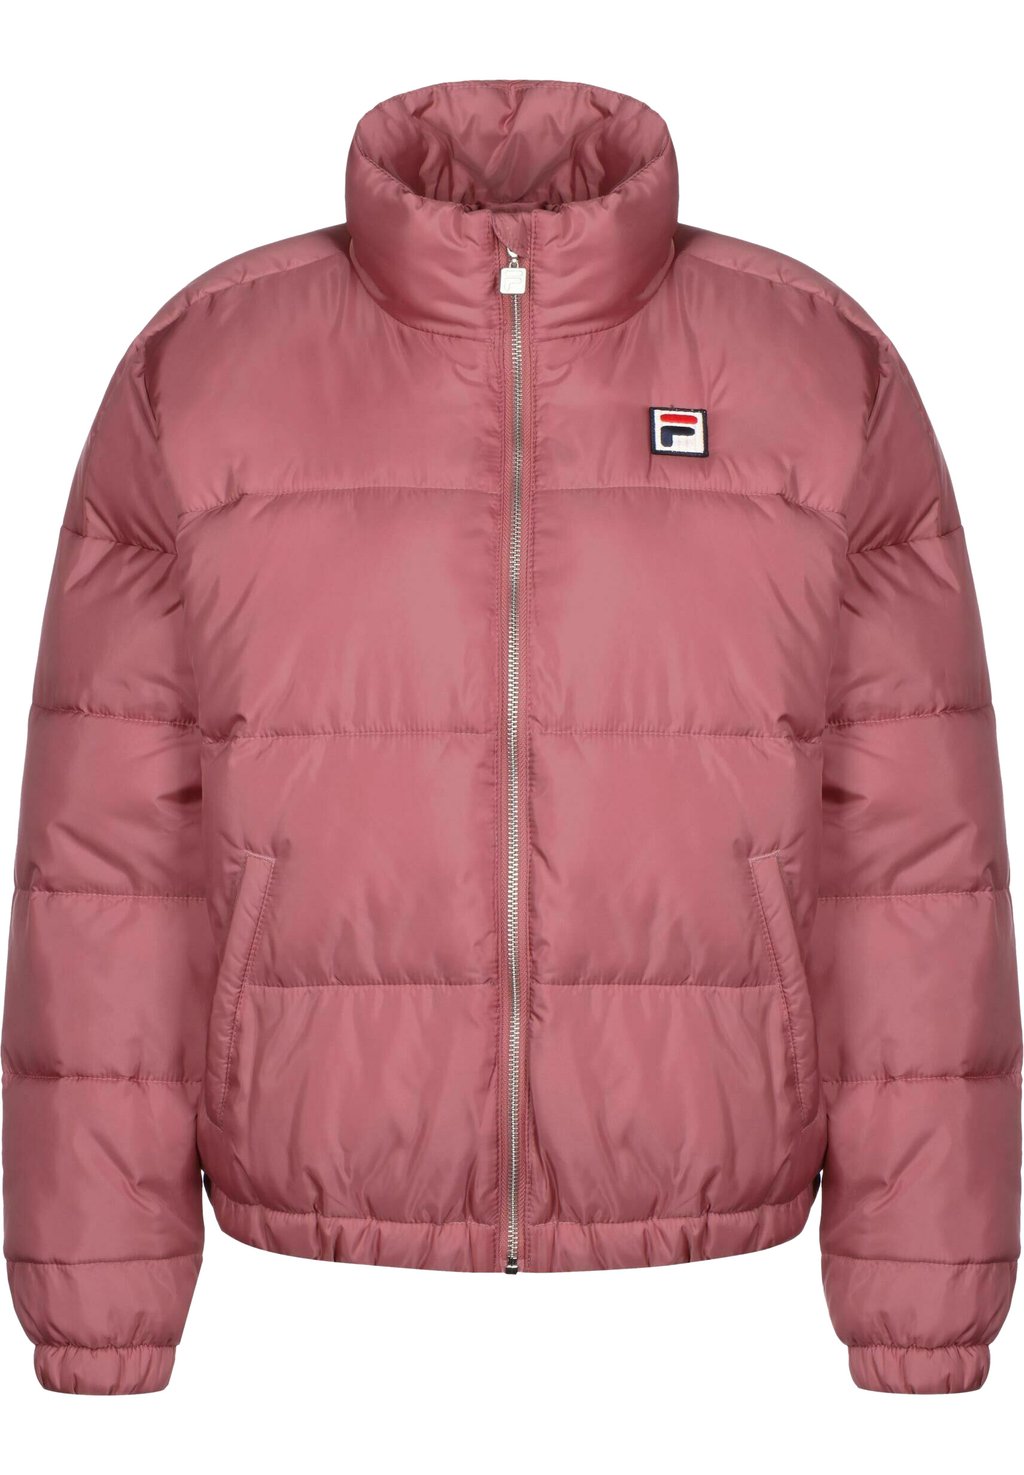 Зимняя куртка Fila кроссовки reflex hummel цвет baroque rose